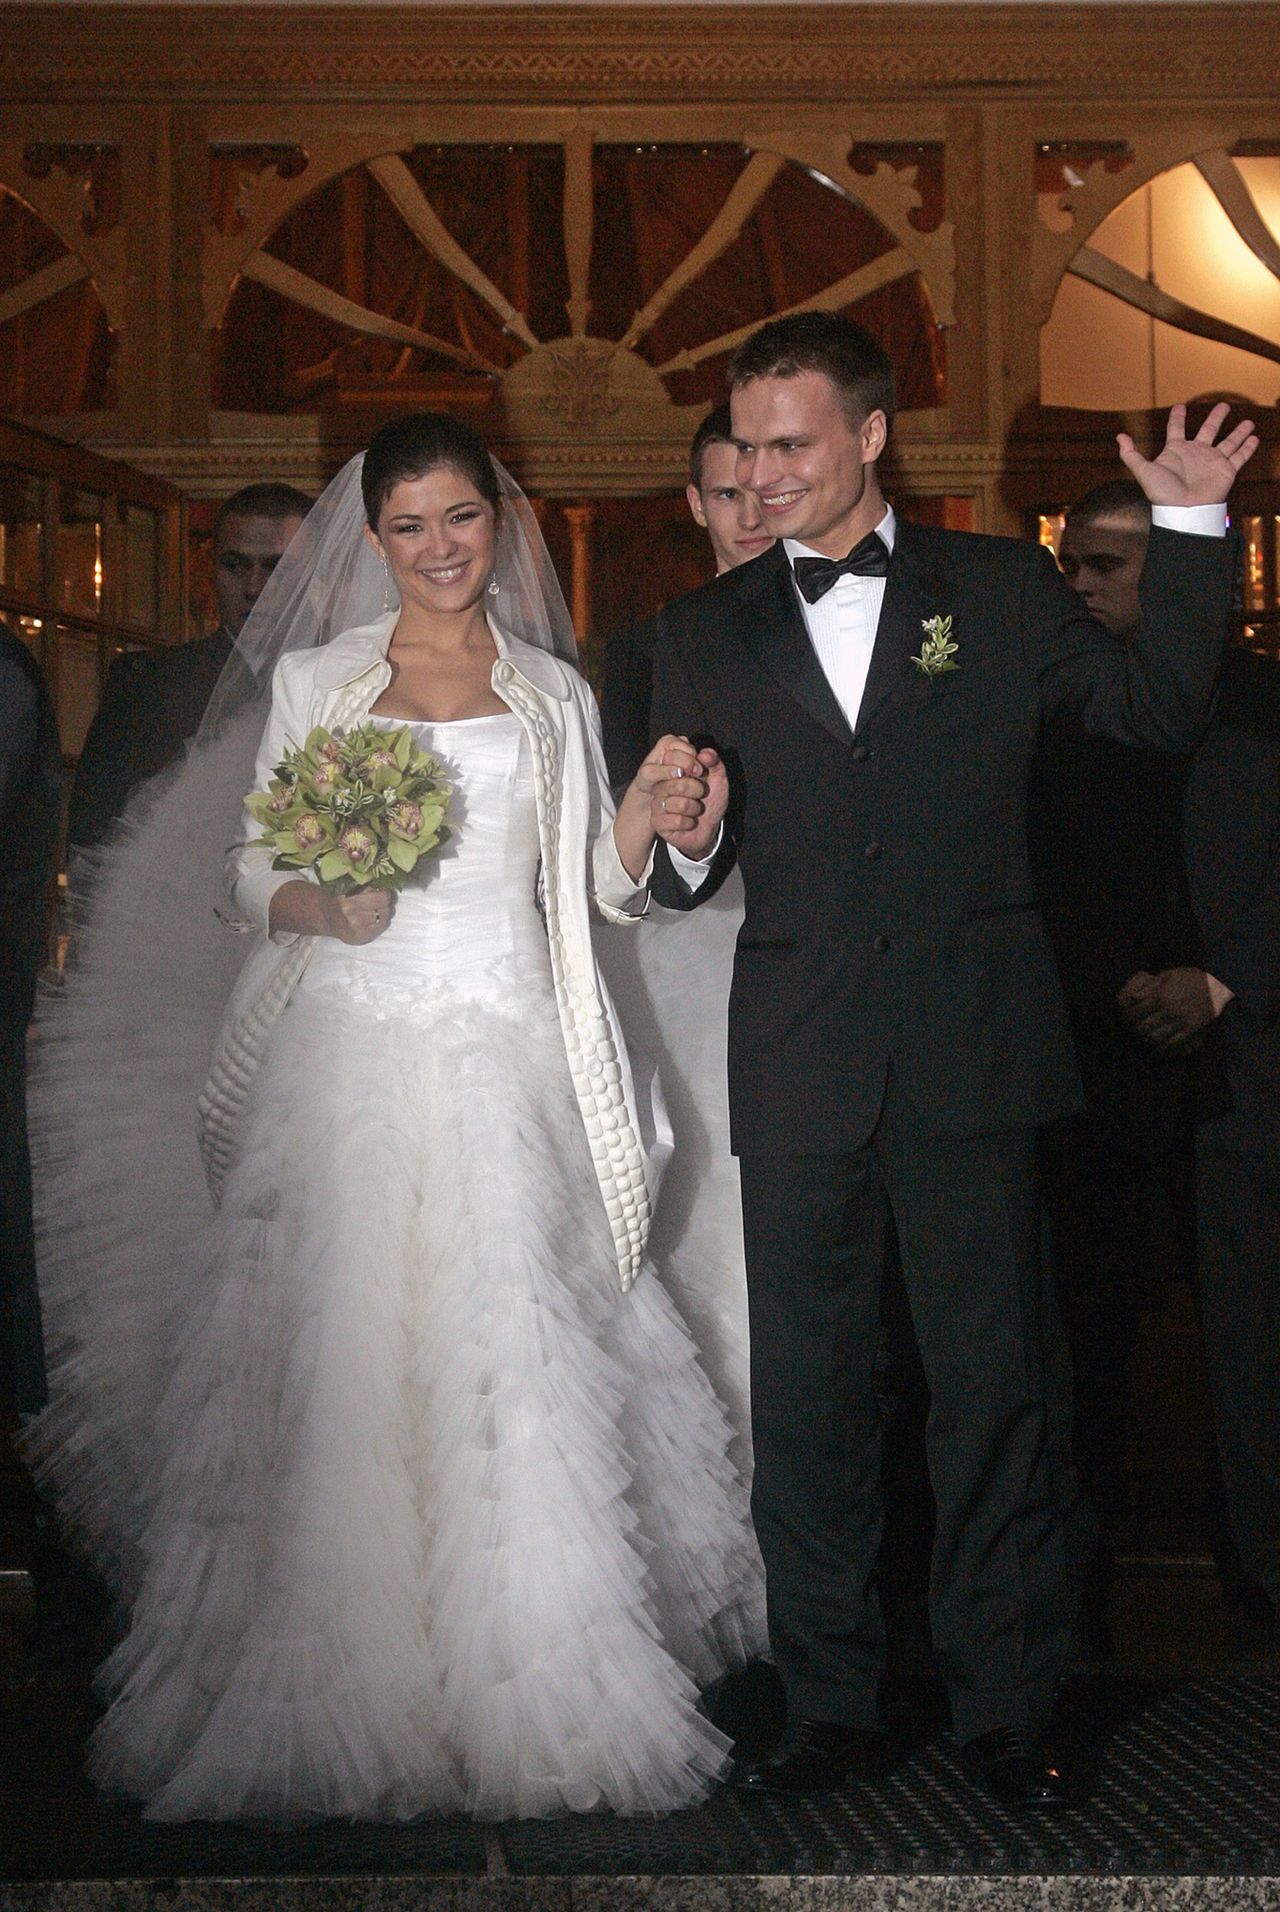 Katarzyna Cichopek w sukni ślubnej i żakiecie